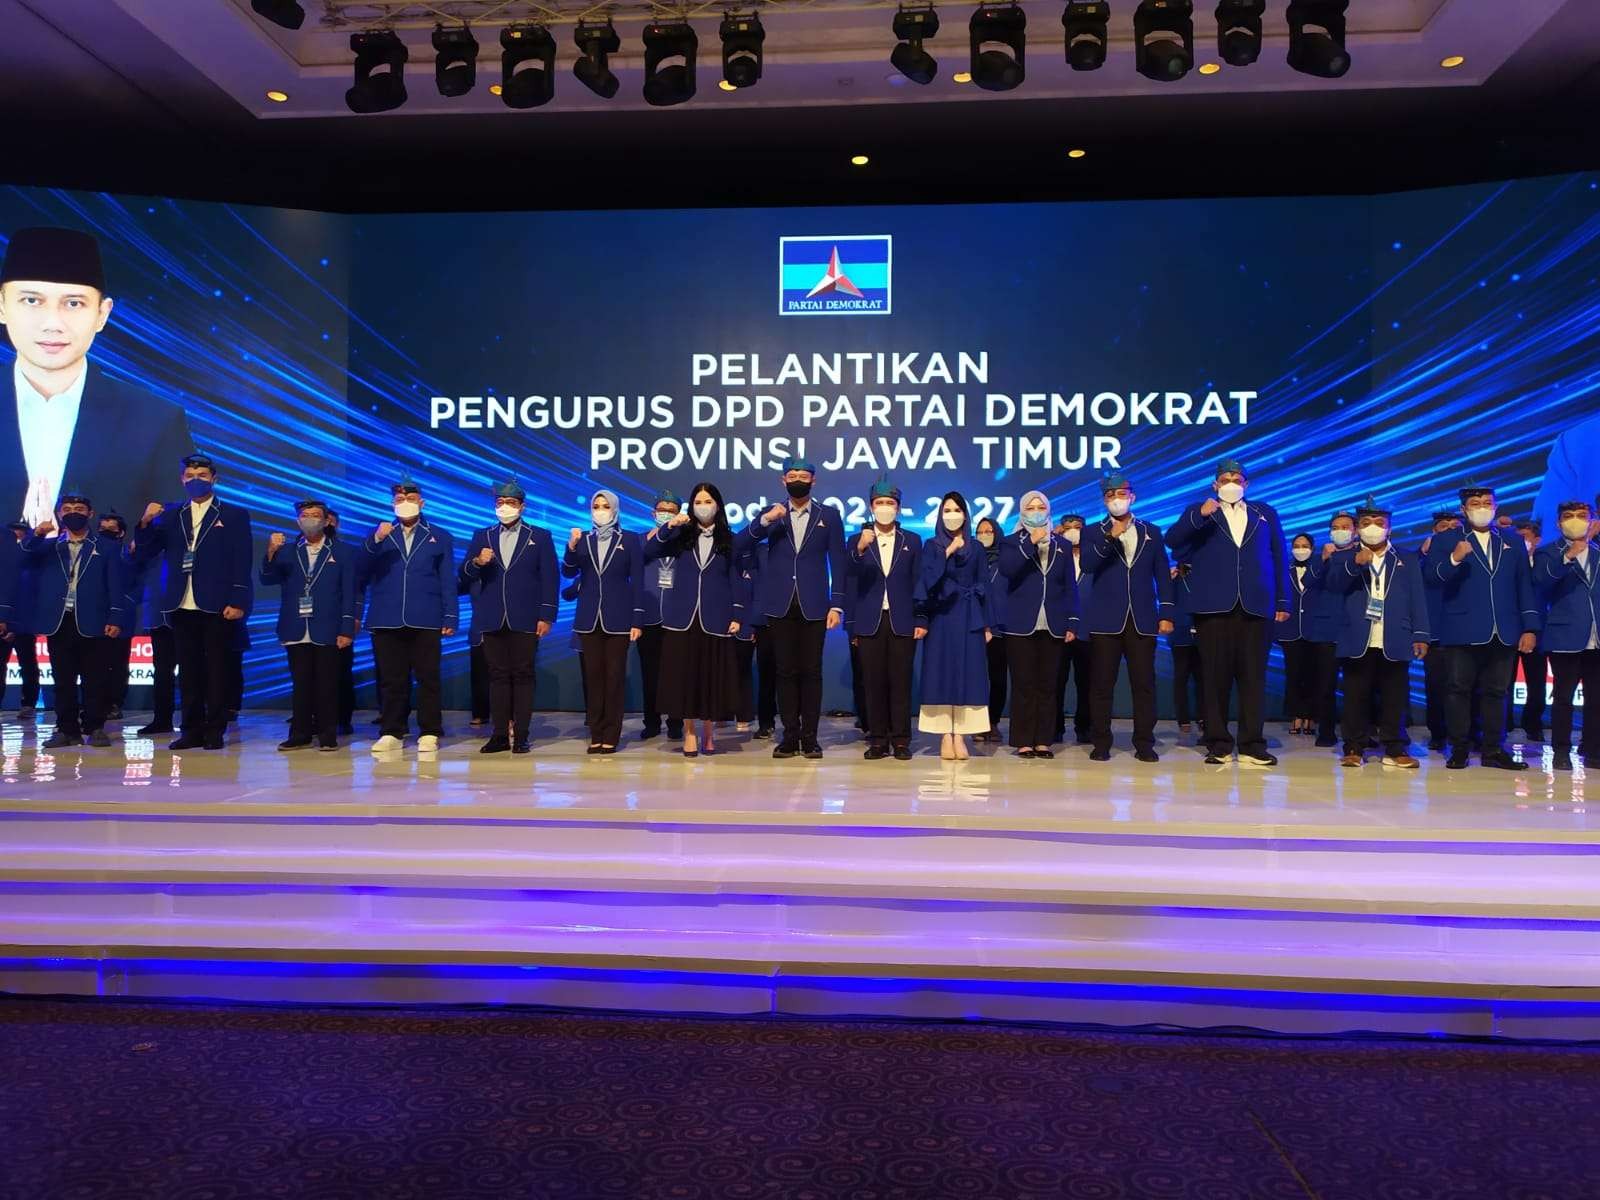 Ketum DPP Partai Demokrat, Agus Harimurti Yudhoyono (tengah) saat melantik pengurus DPD Demokrat Jatim di Ballroom Pakuwon Imperial, Surabaya, Jumat 22 April 2022.